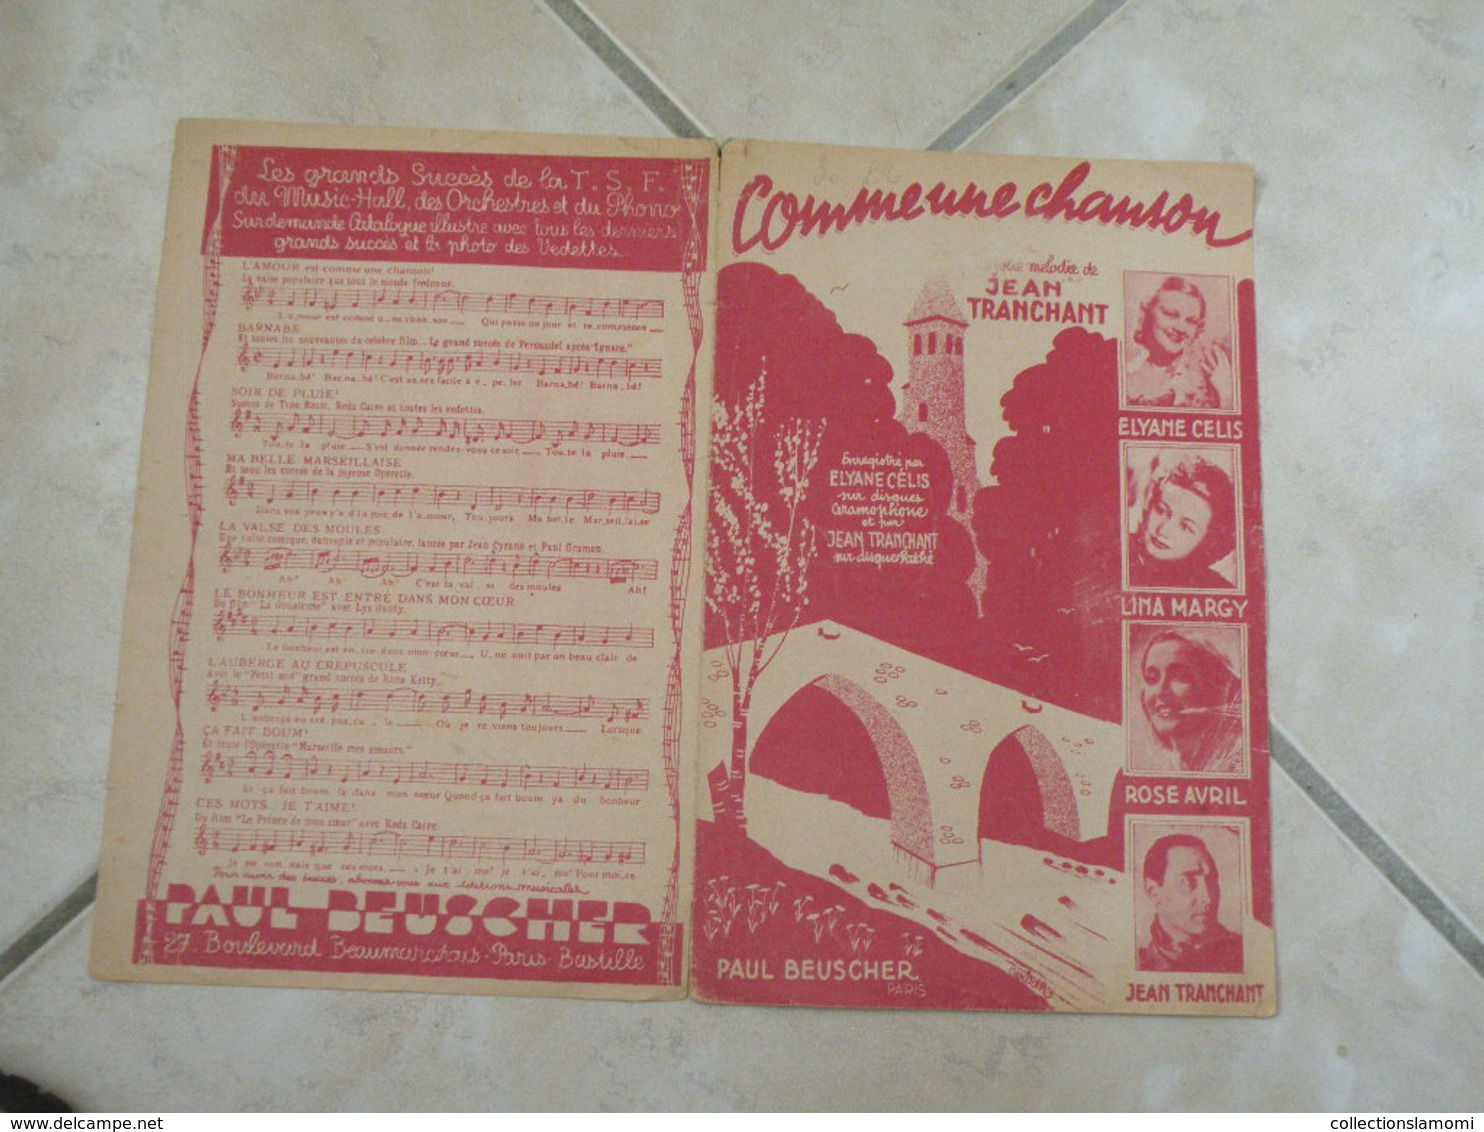 Comme Une Chanson -(Paroles J.H. Tranchant)-(Musique J. Tranchant) Partition 1949 - Chansonniers